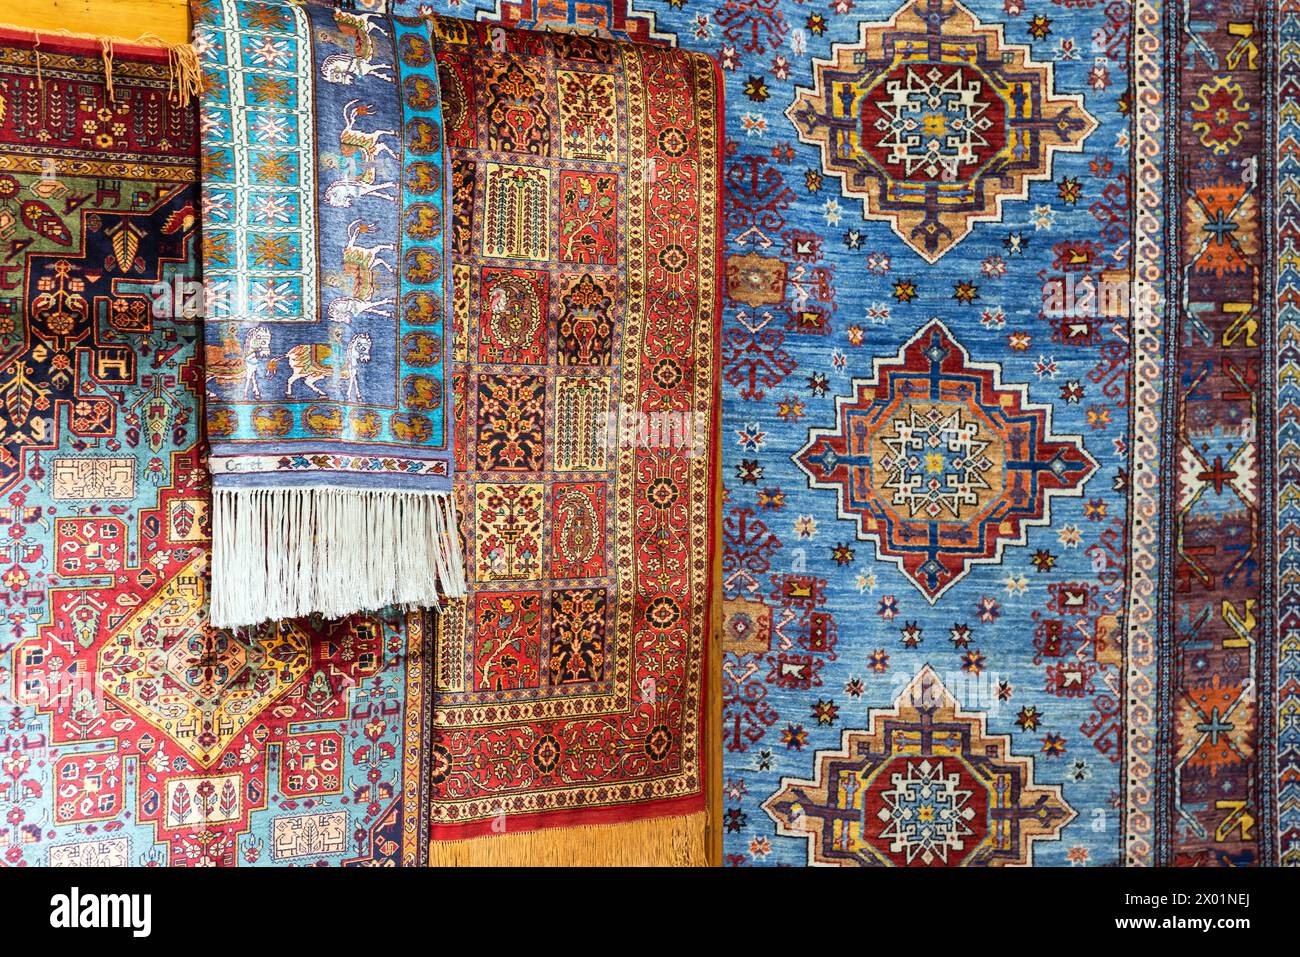 Assortiment de tapis de soie orientaux avec des motifs géométriques colorés Banque D'Images